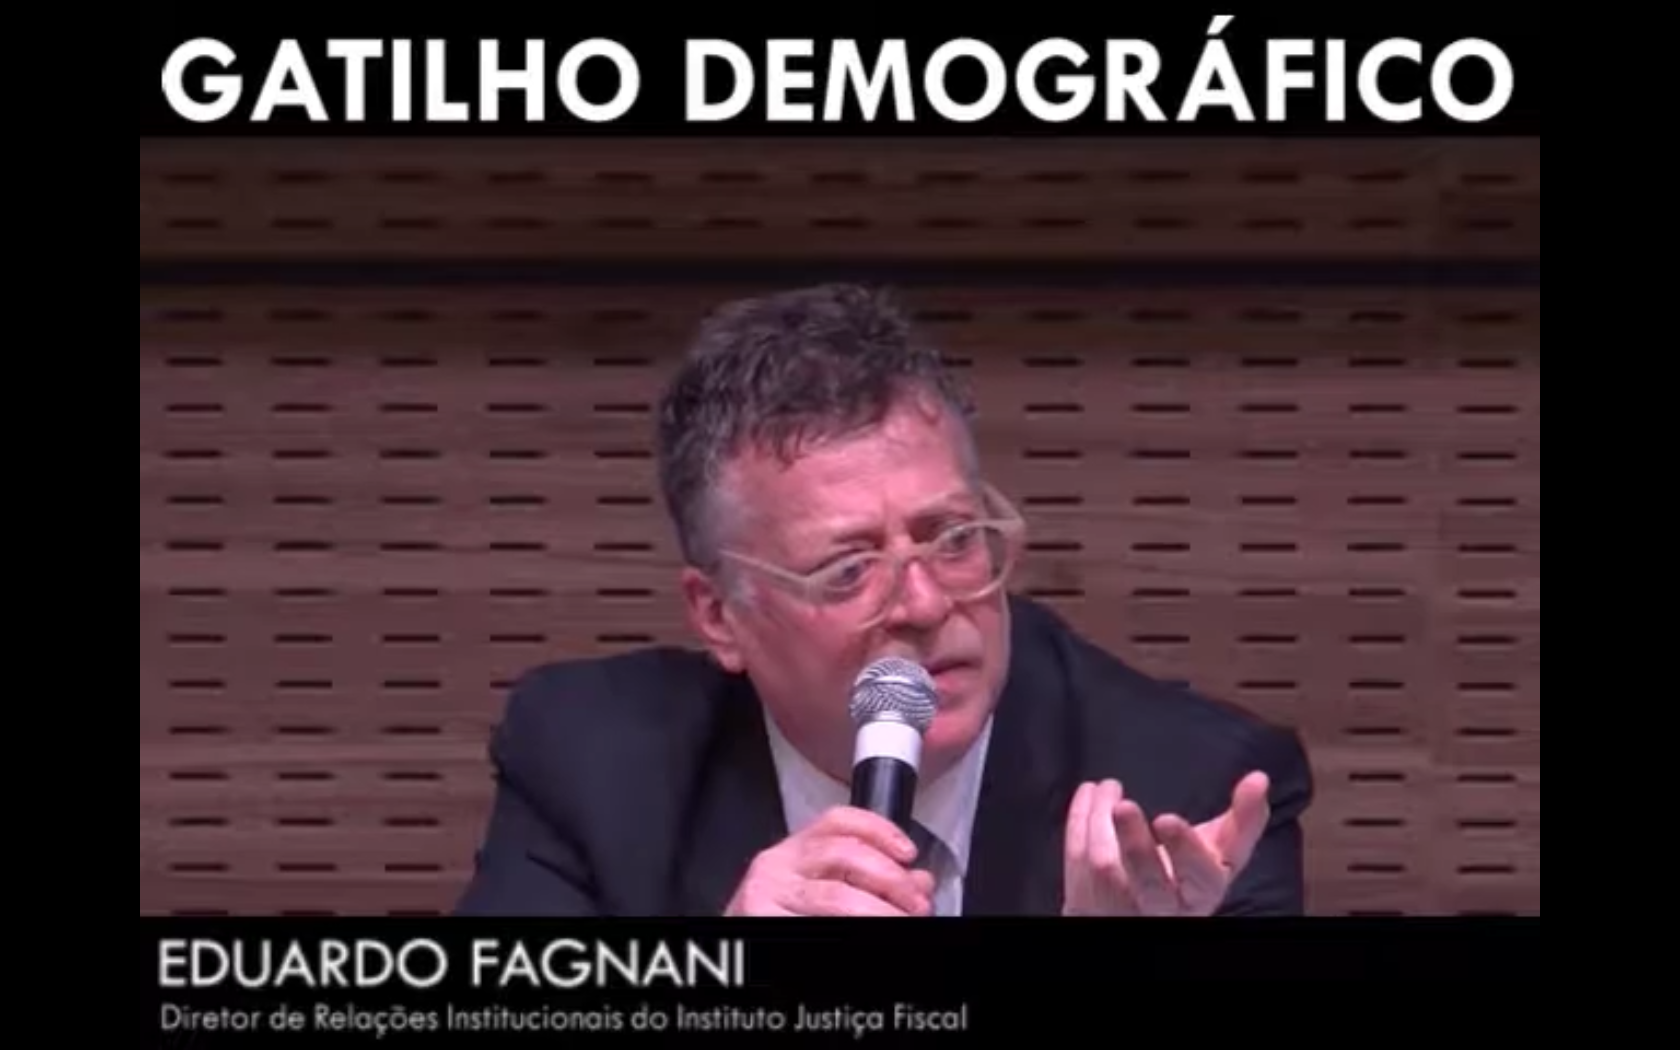 Gatilho demográfico - Eduardo Fagnani